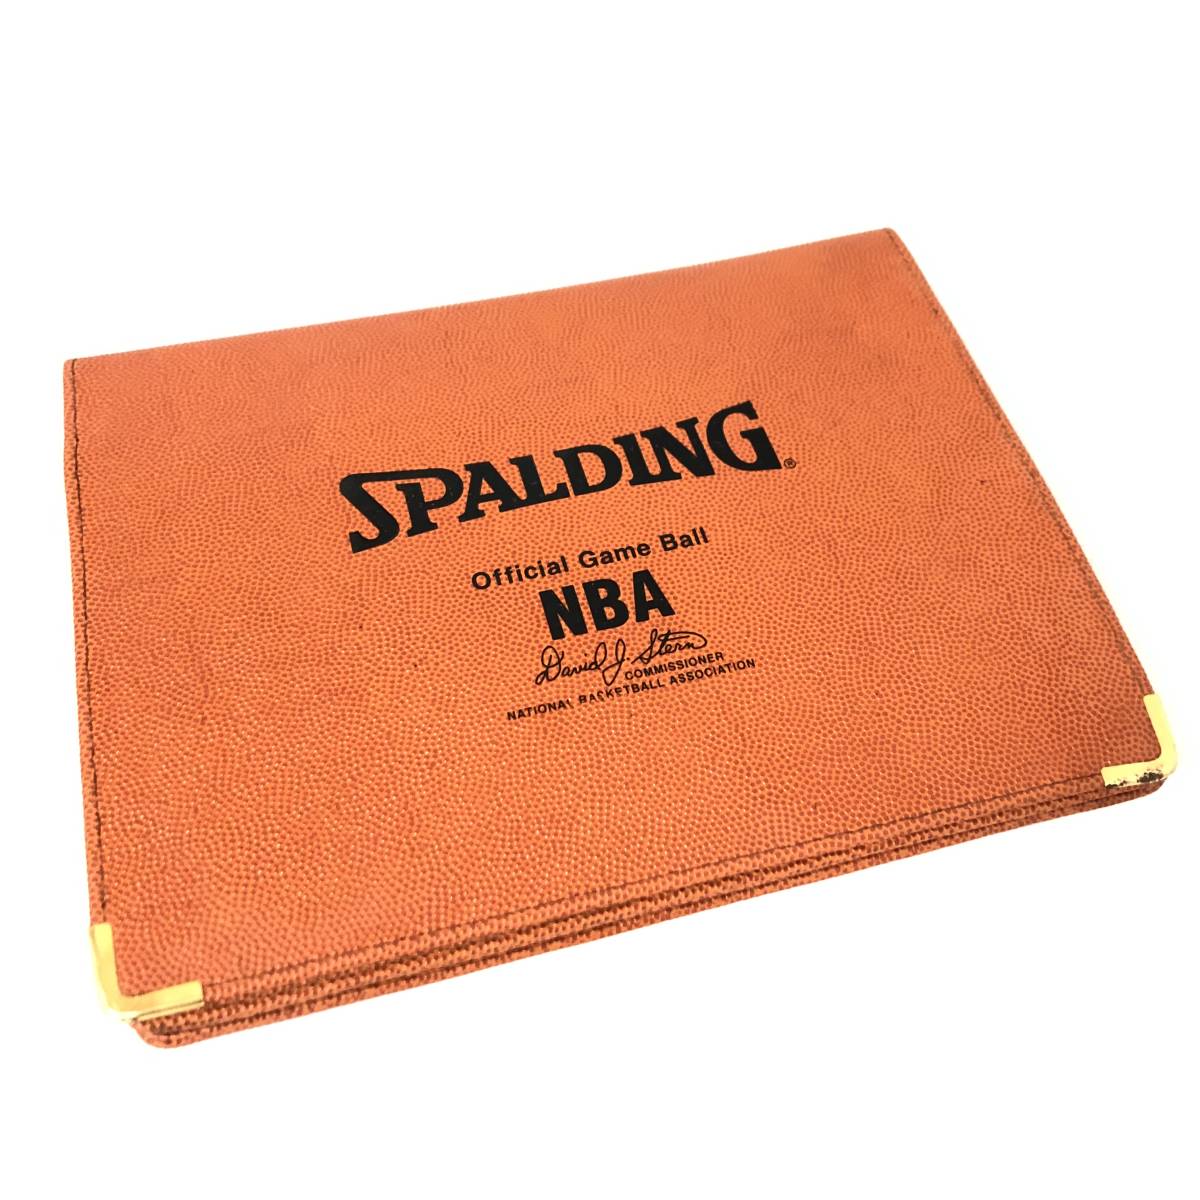 〇FI14/36 SPALDING NBA オフィシャル クラッチバッグ 約35×27.5cm セカンドバッグ バスケットボール素材 ハンドバッグ スポルディング●の画像1